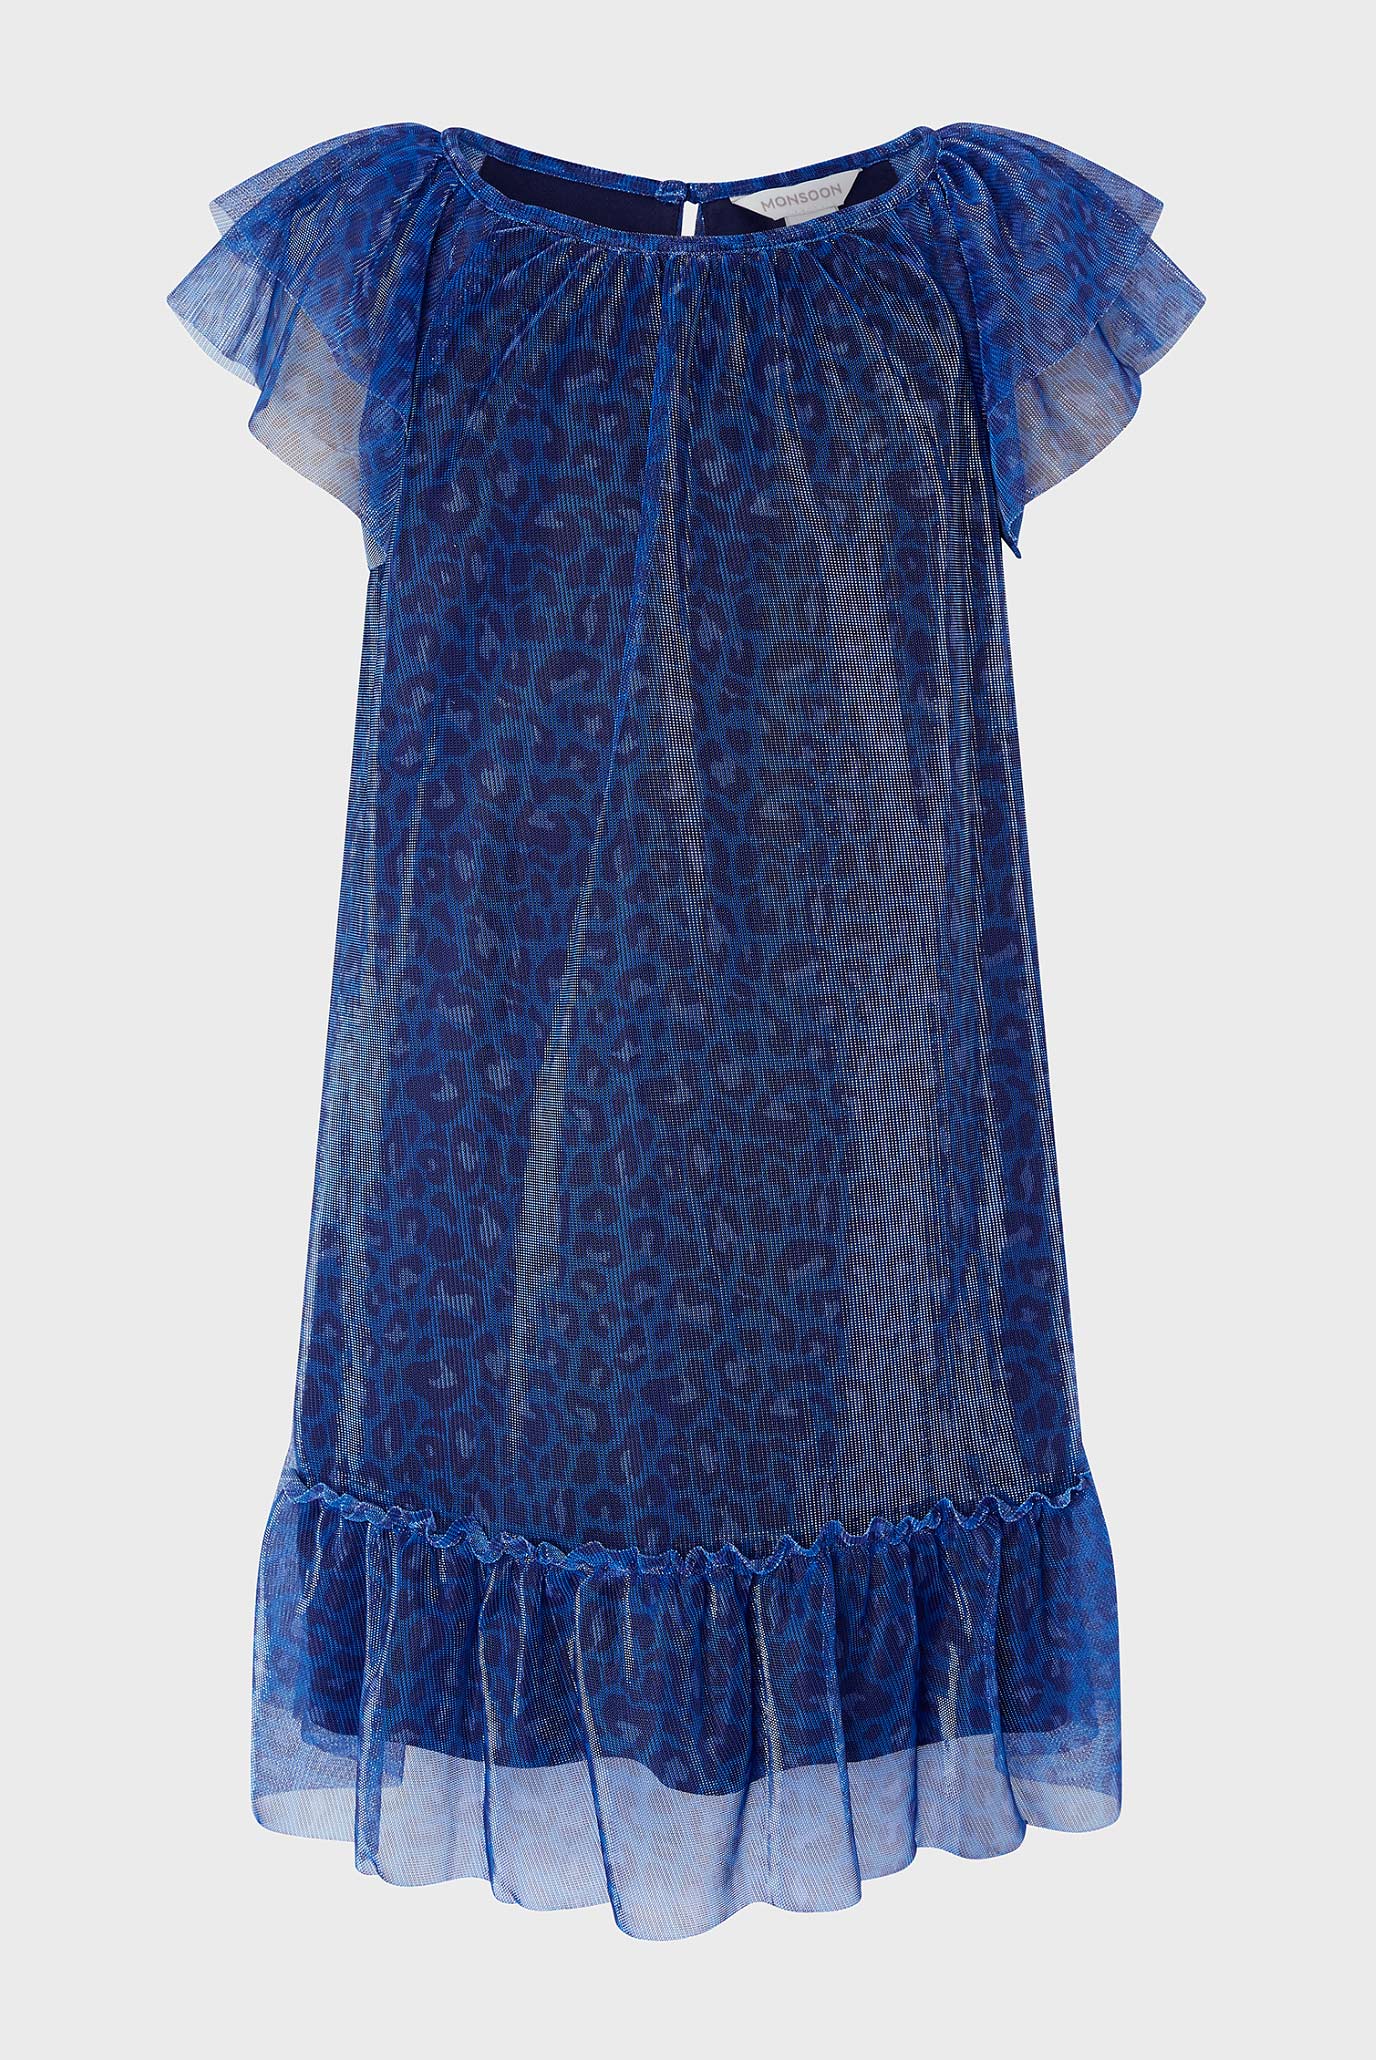 Дитяча синя сукня Ava Animal Dress 1